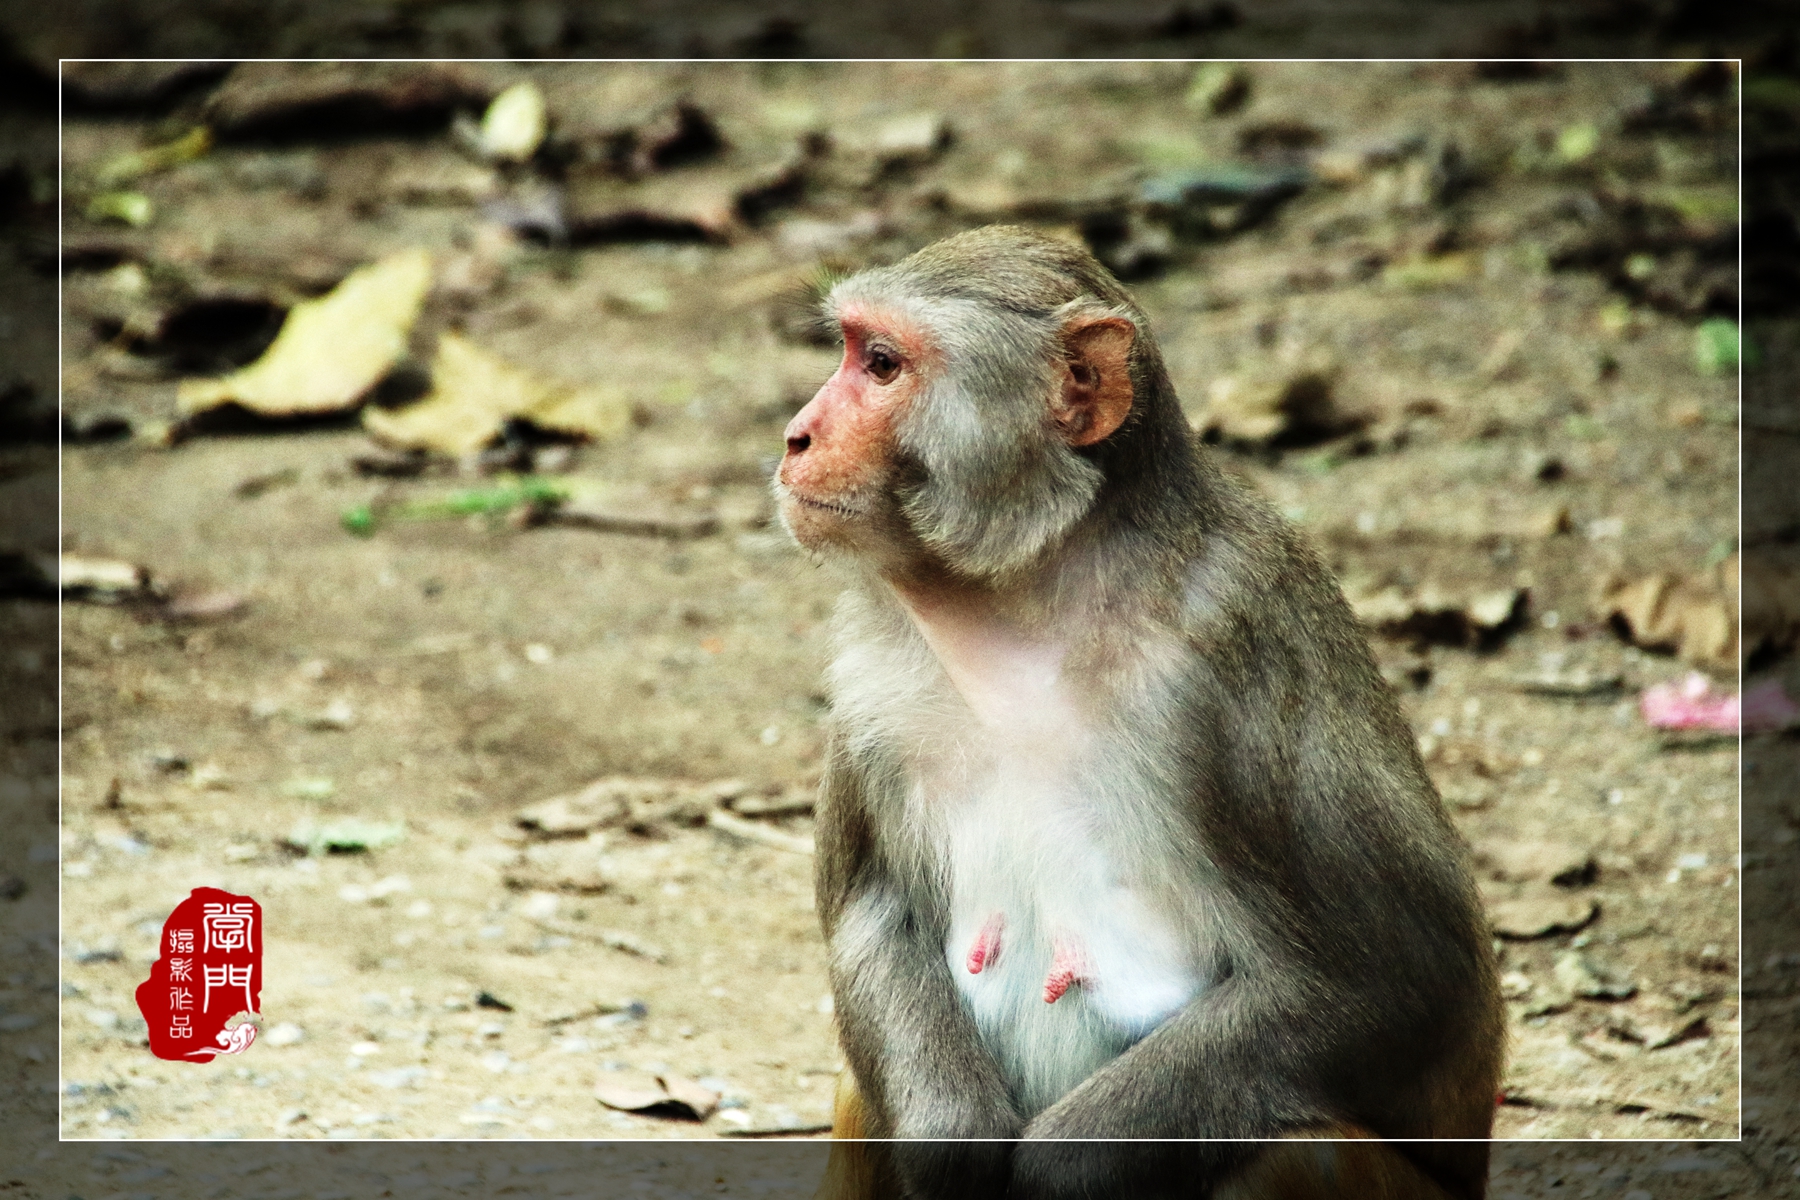 佛祖家的猴子,最后一只在冥想打坐【尼泊尔】